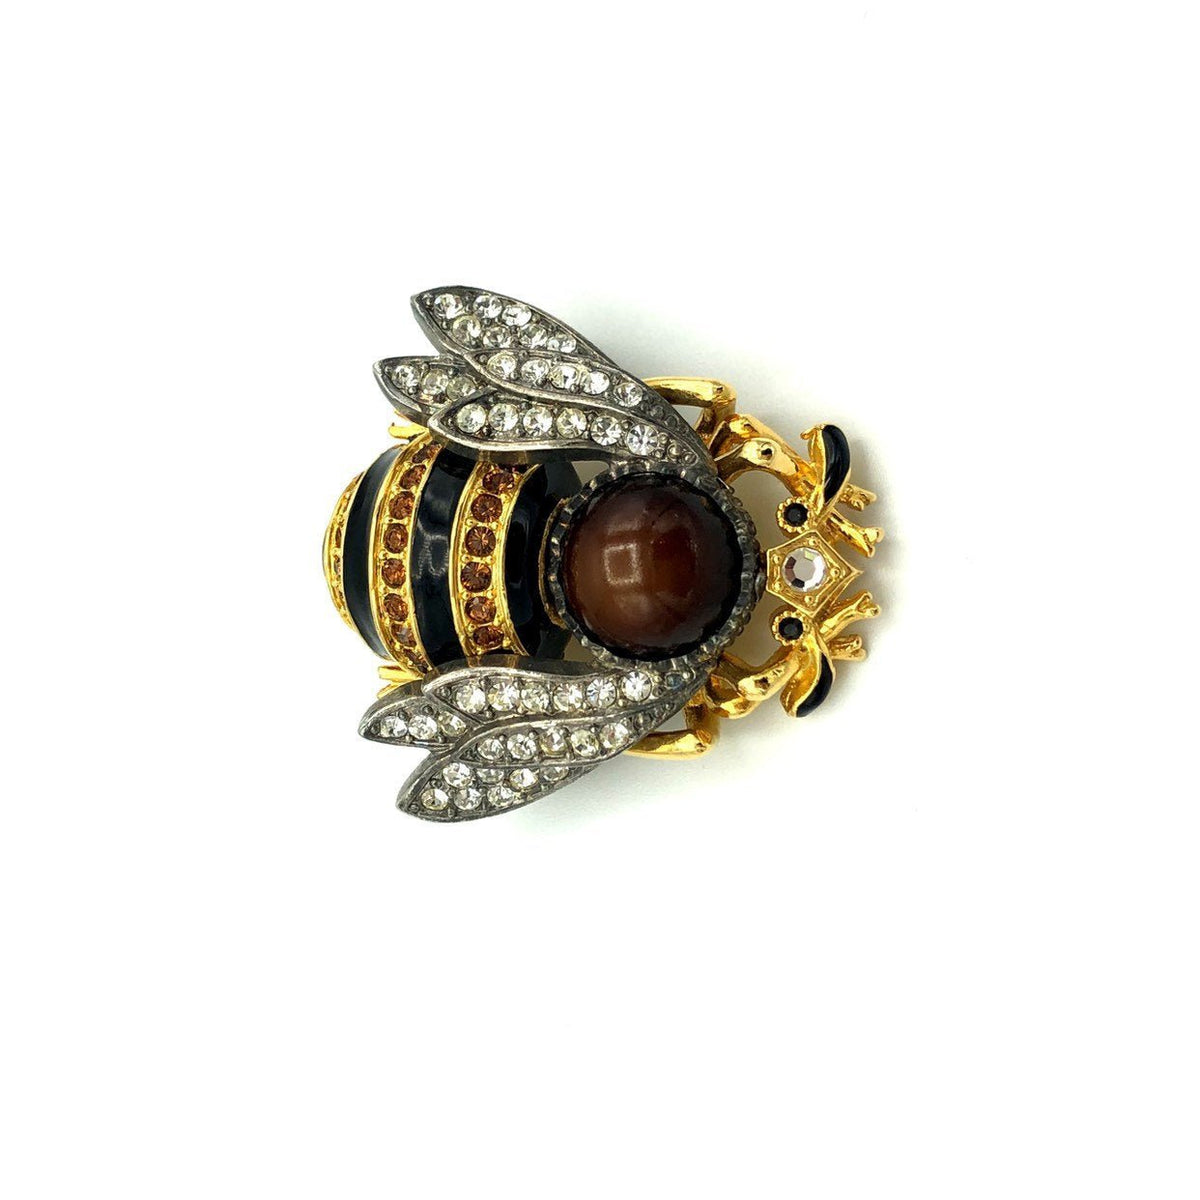 Large Edgar Berebi Figural Enamel Bee Brooch - 24 Wishes Vintage Jewelry